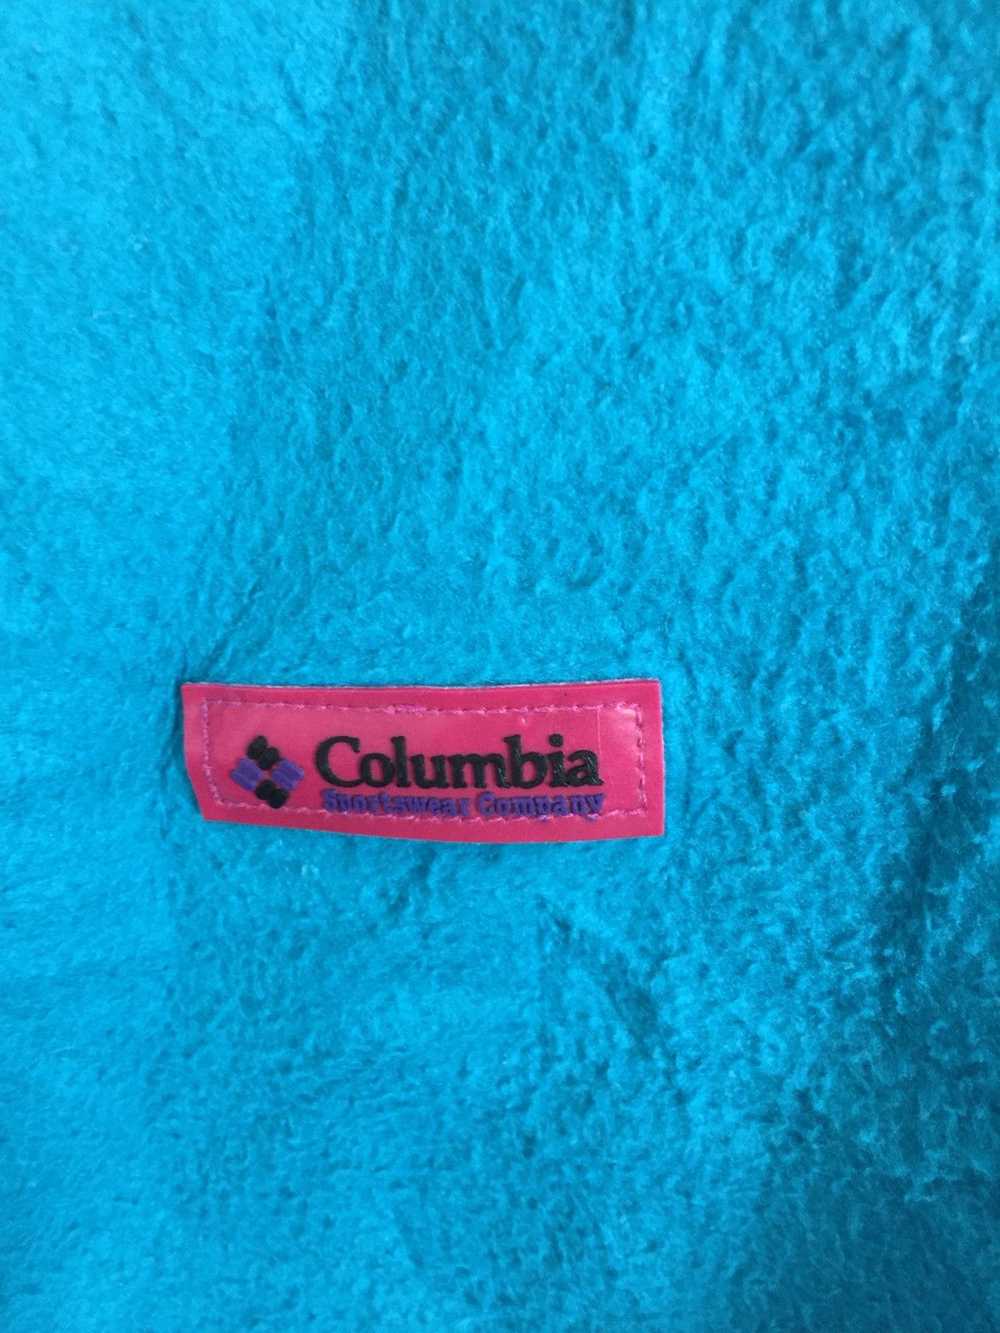 Columbia × Sportswear COLOMBIA Sportwear Company … - image 4